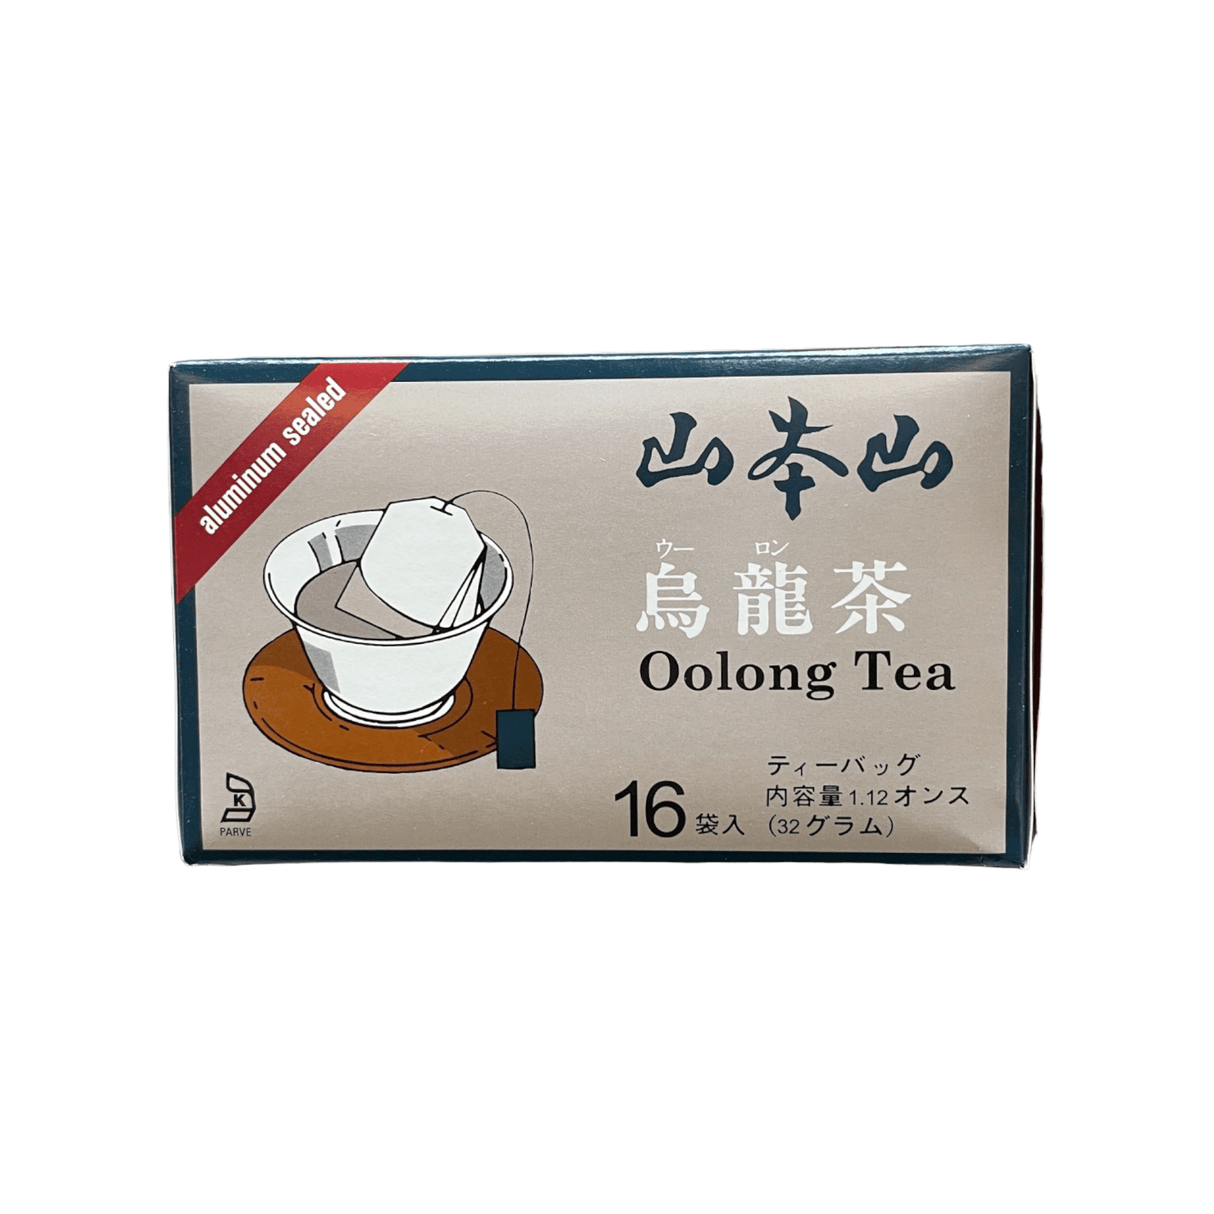 Yamamotoyama Oolong Tea